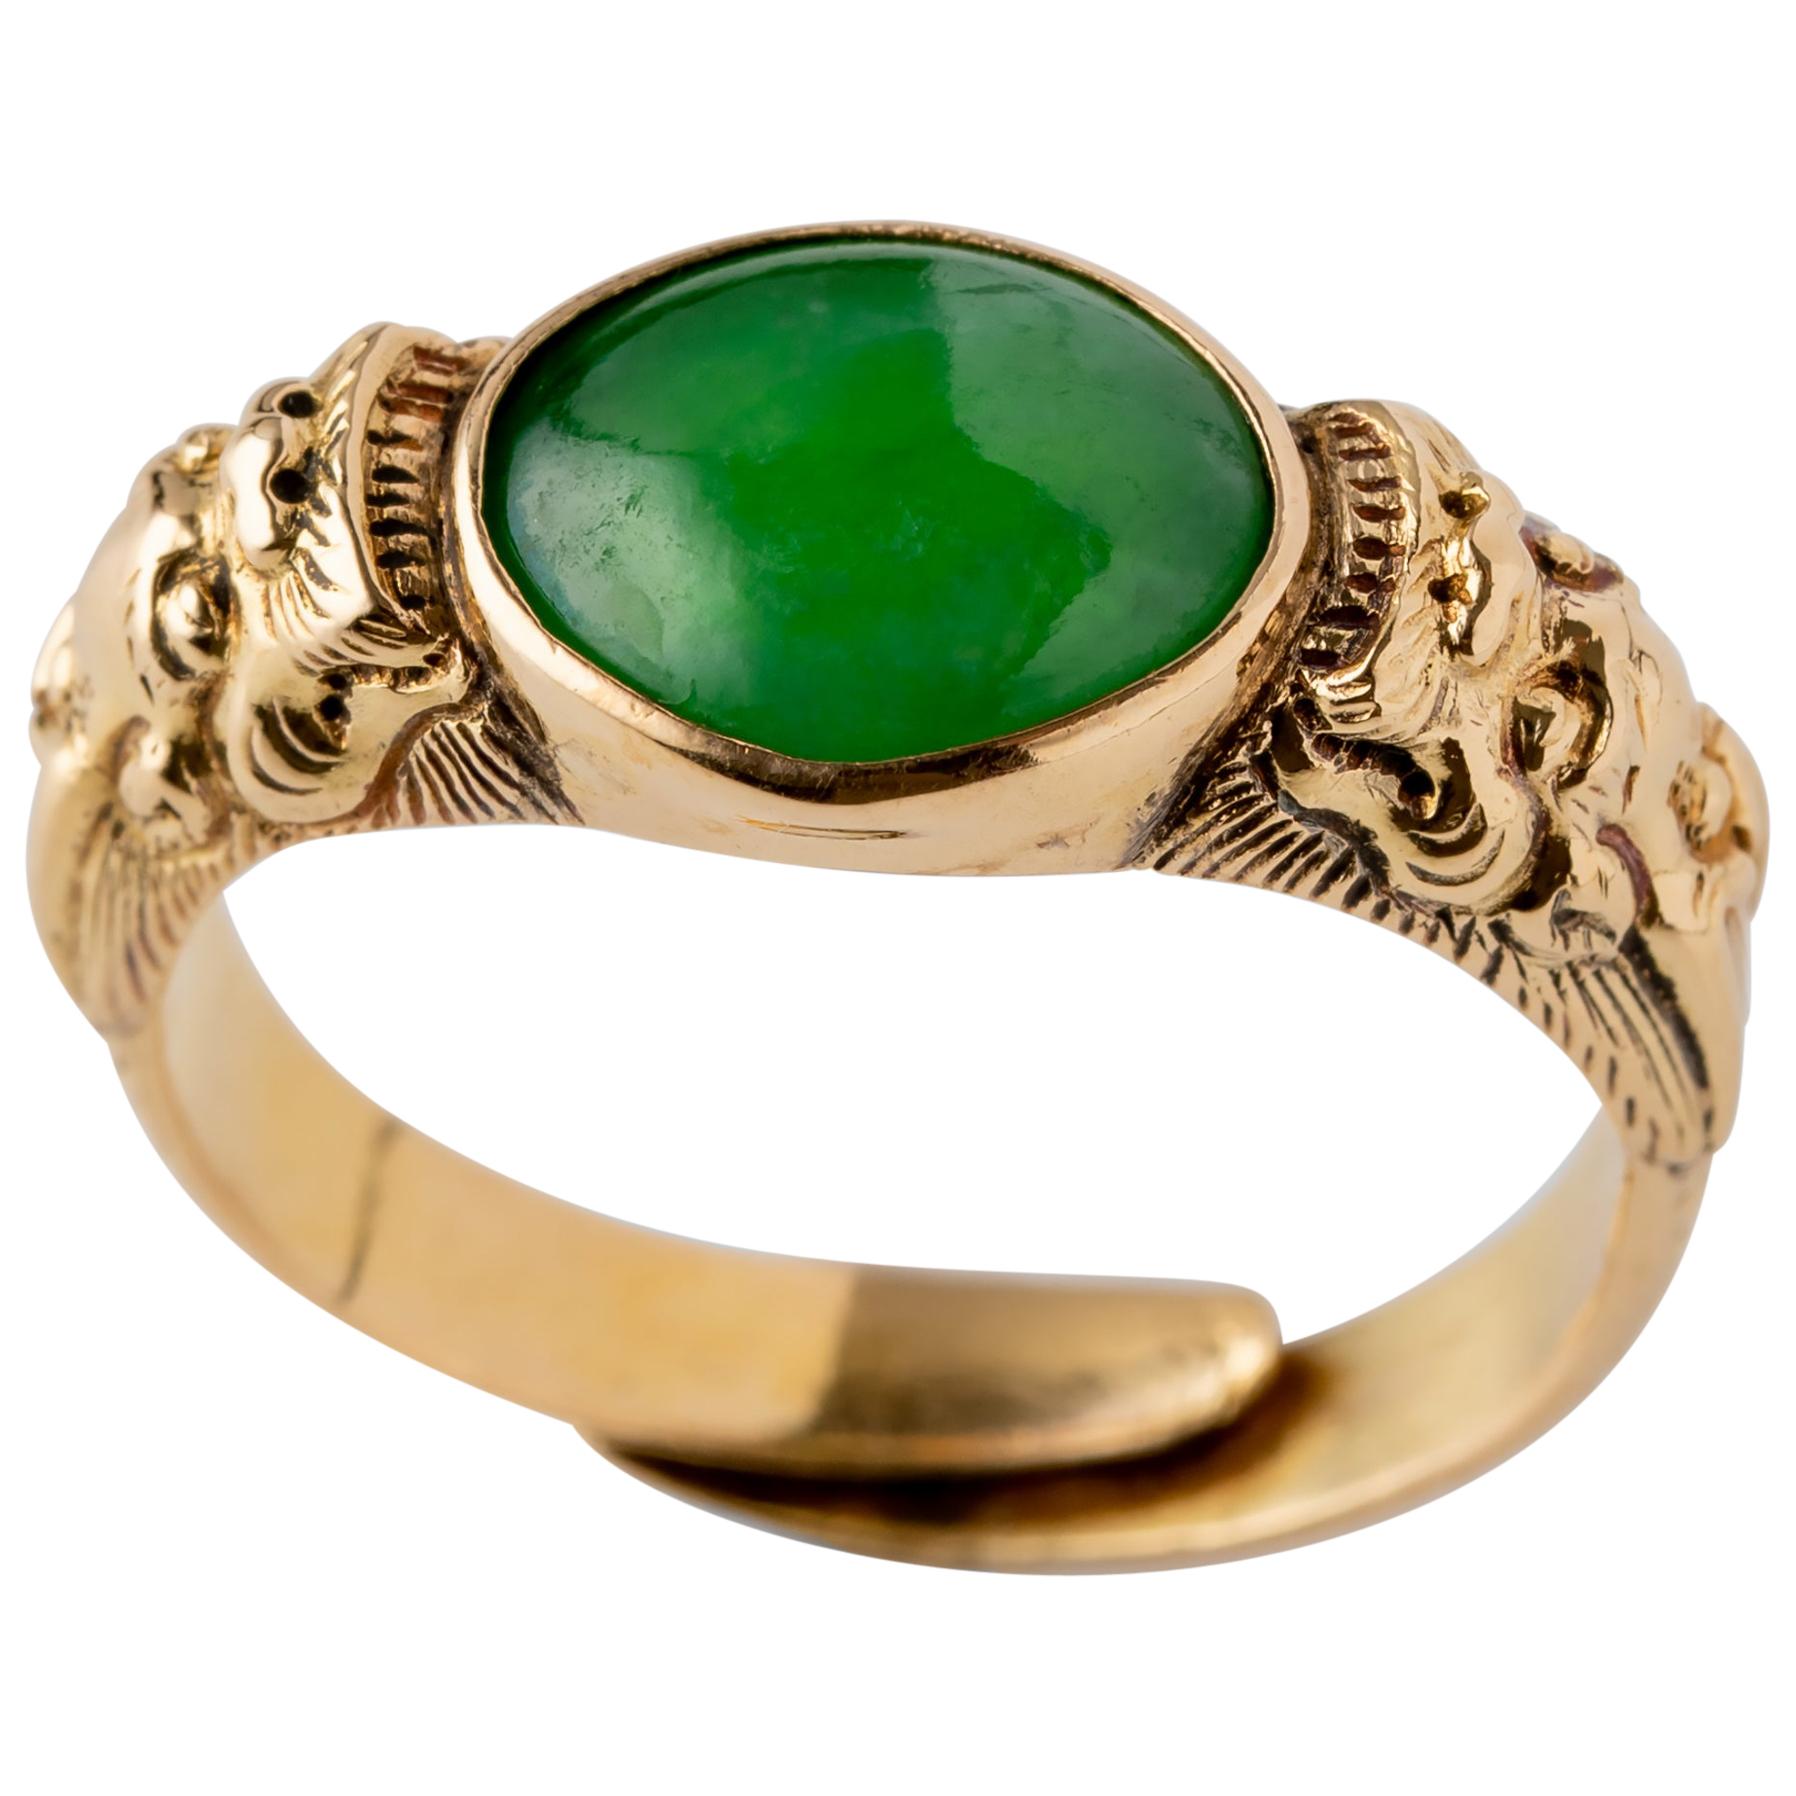 Antique Jade Ring 20 Karat Gold Adjustable Band GIA Certified